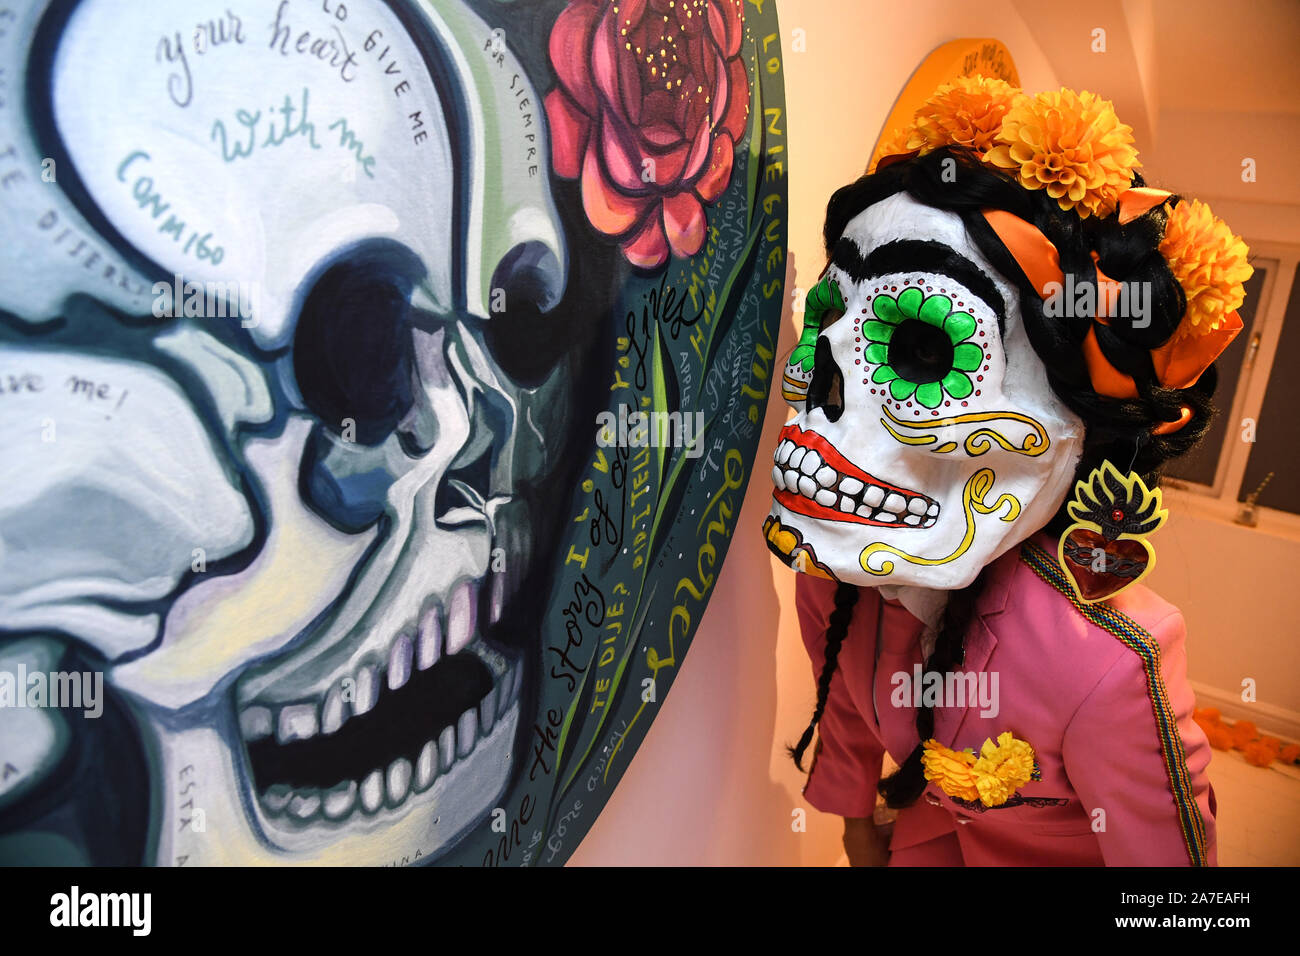 Personajes tradicionales mexicanos de Dia de Muertos como La Calavera  Catrina, mariposas monarca y cráneos de azúcar, celebran en las calles del  Soho las celebraciones del Día de los Muertos del Patrón